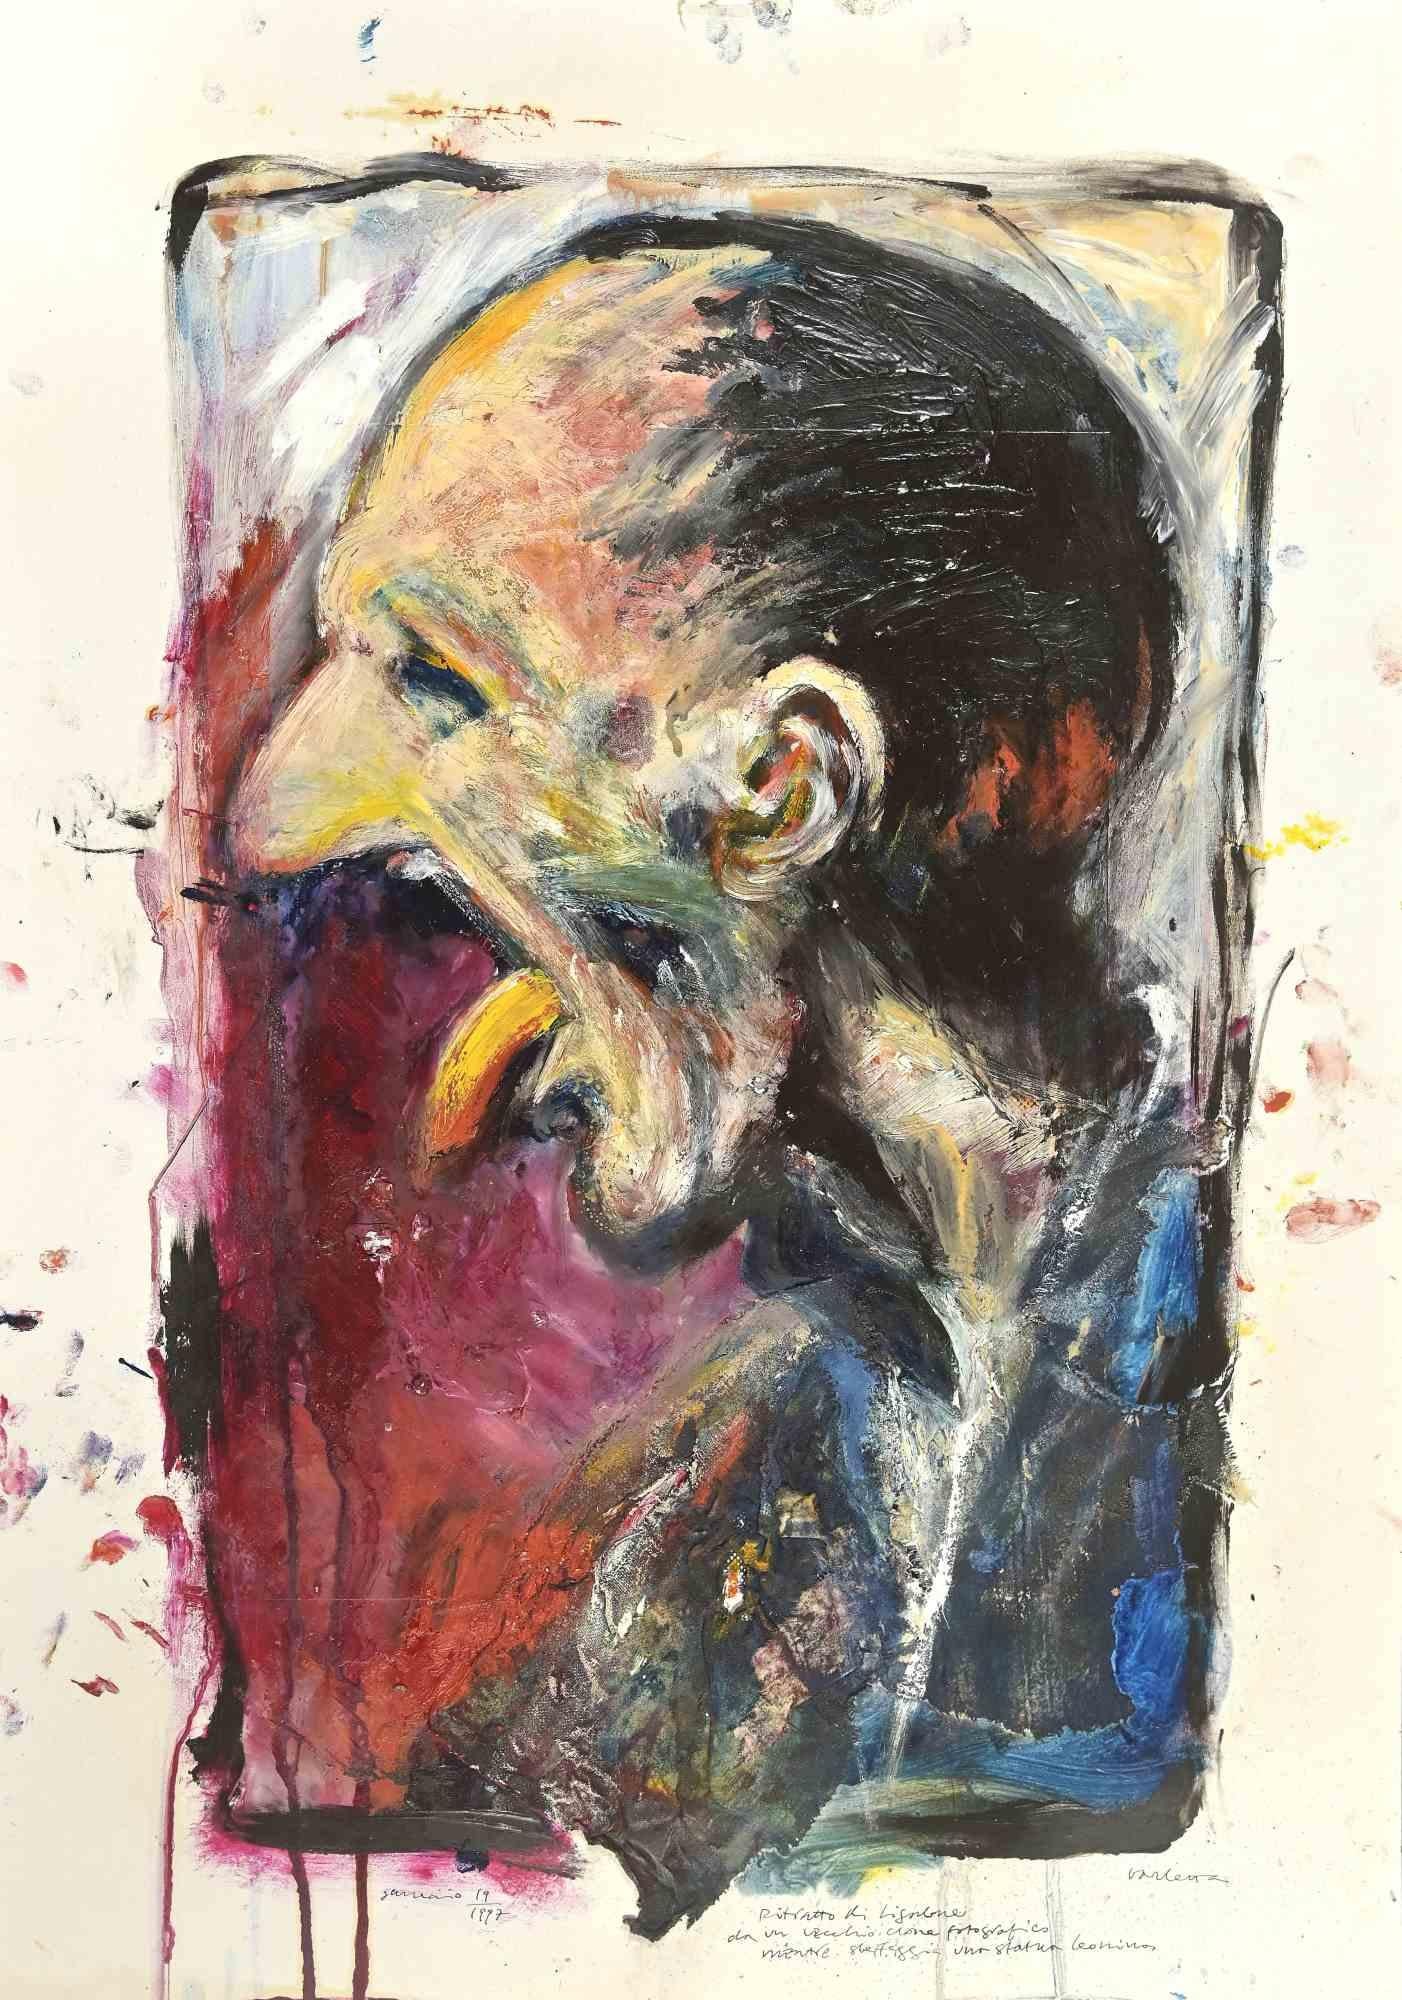 Le portrait de Ligabue est un  peinture, réalisée par Sergio Barletta en 1997.

Tempera et aquarelle sur carton

Signé à la main dans la marge inférieure. 

Bonnes conditions.

Sergio Barletta (1934) est un dessinateur et illustrateur italien qui a